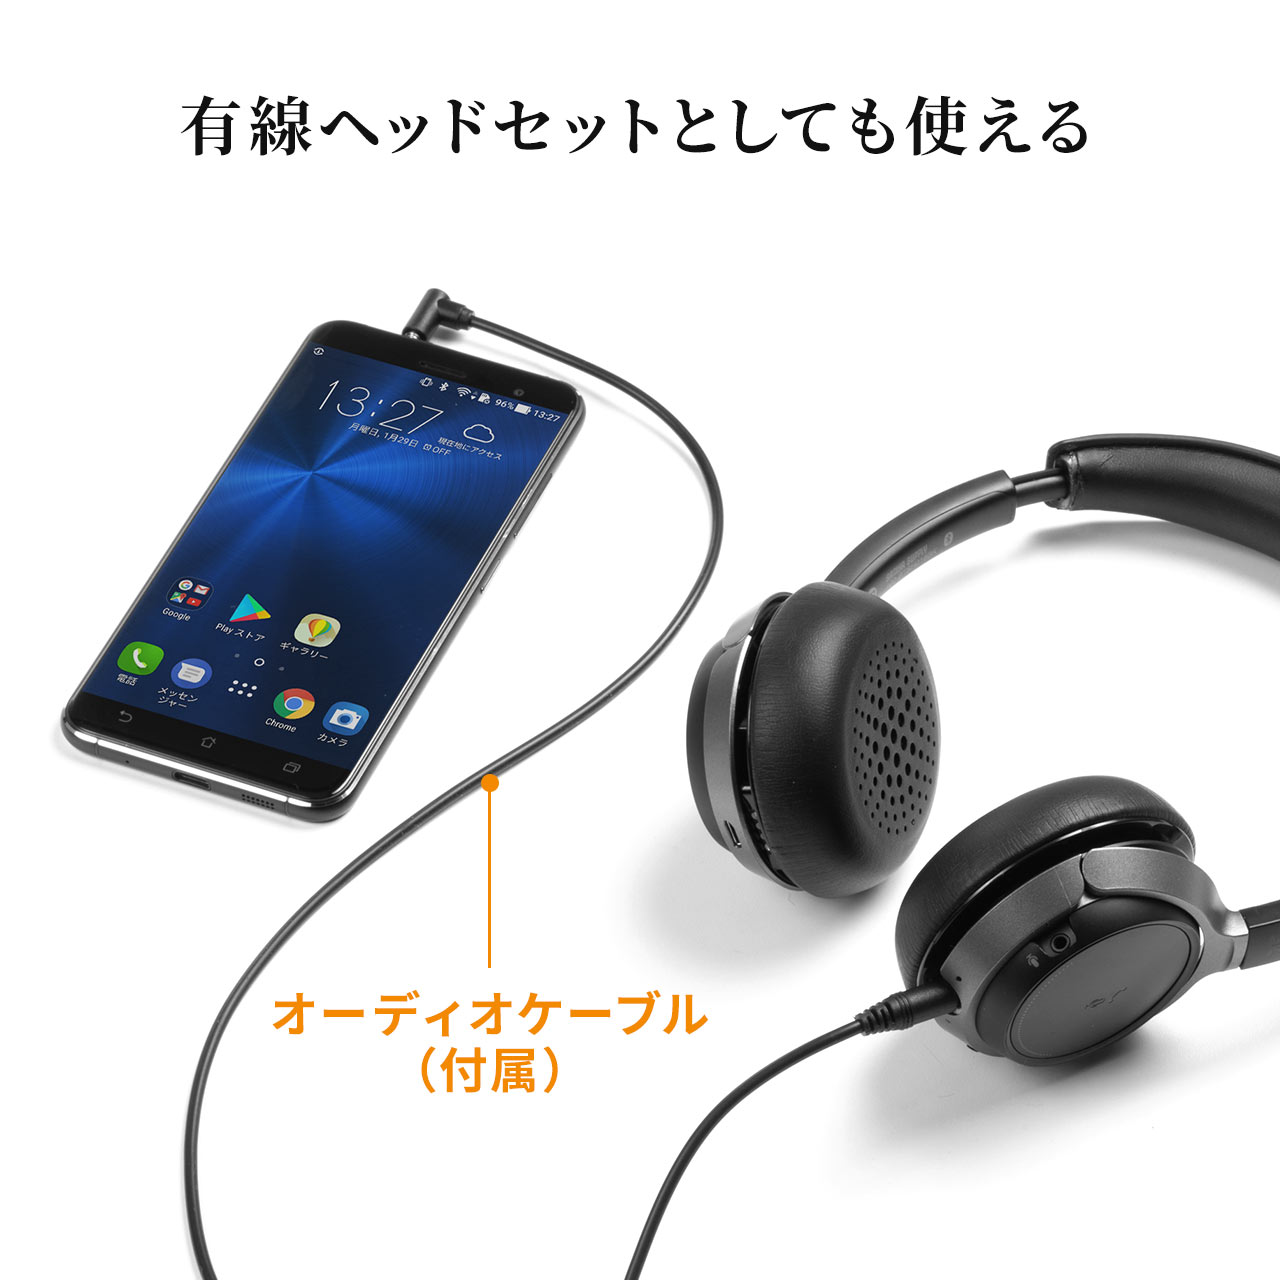 Bluetoothヘッドセット ワイヤレスヘッドセット 無線 両耳タイプ オーバーヘッド 全指向性 在宅勤務 コールセンタークレードルつき コーデック USB 400-BTSH018BK